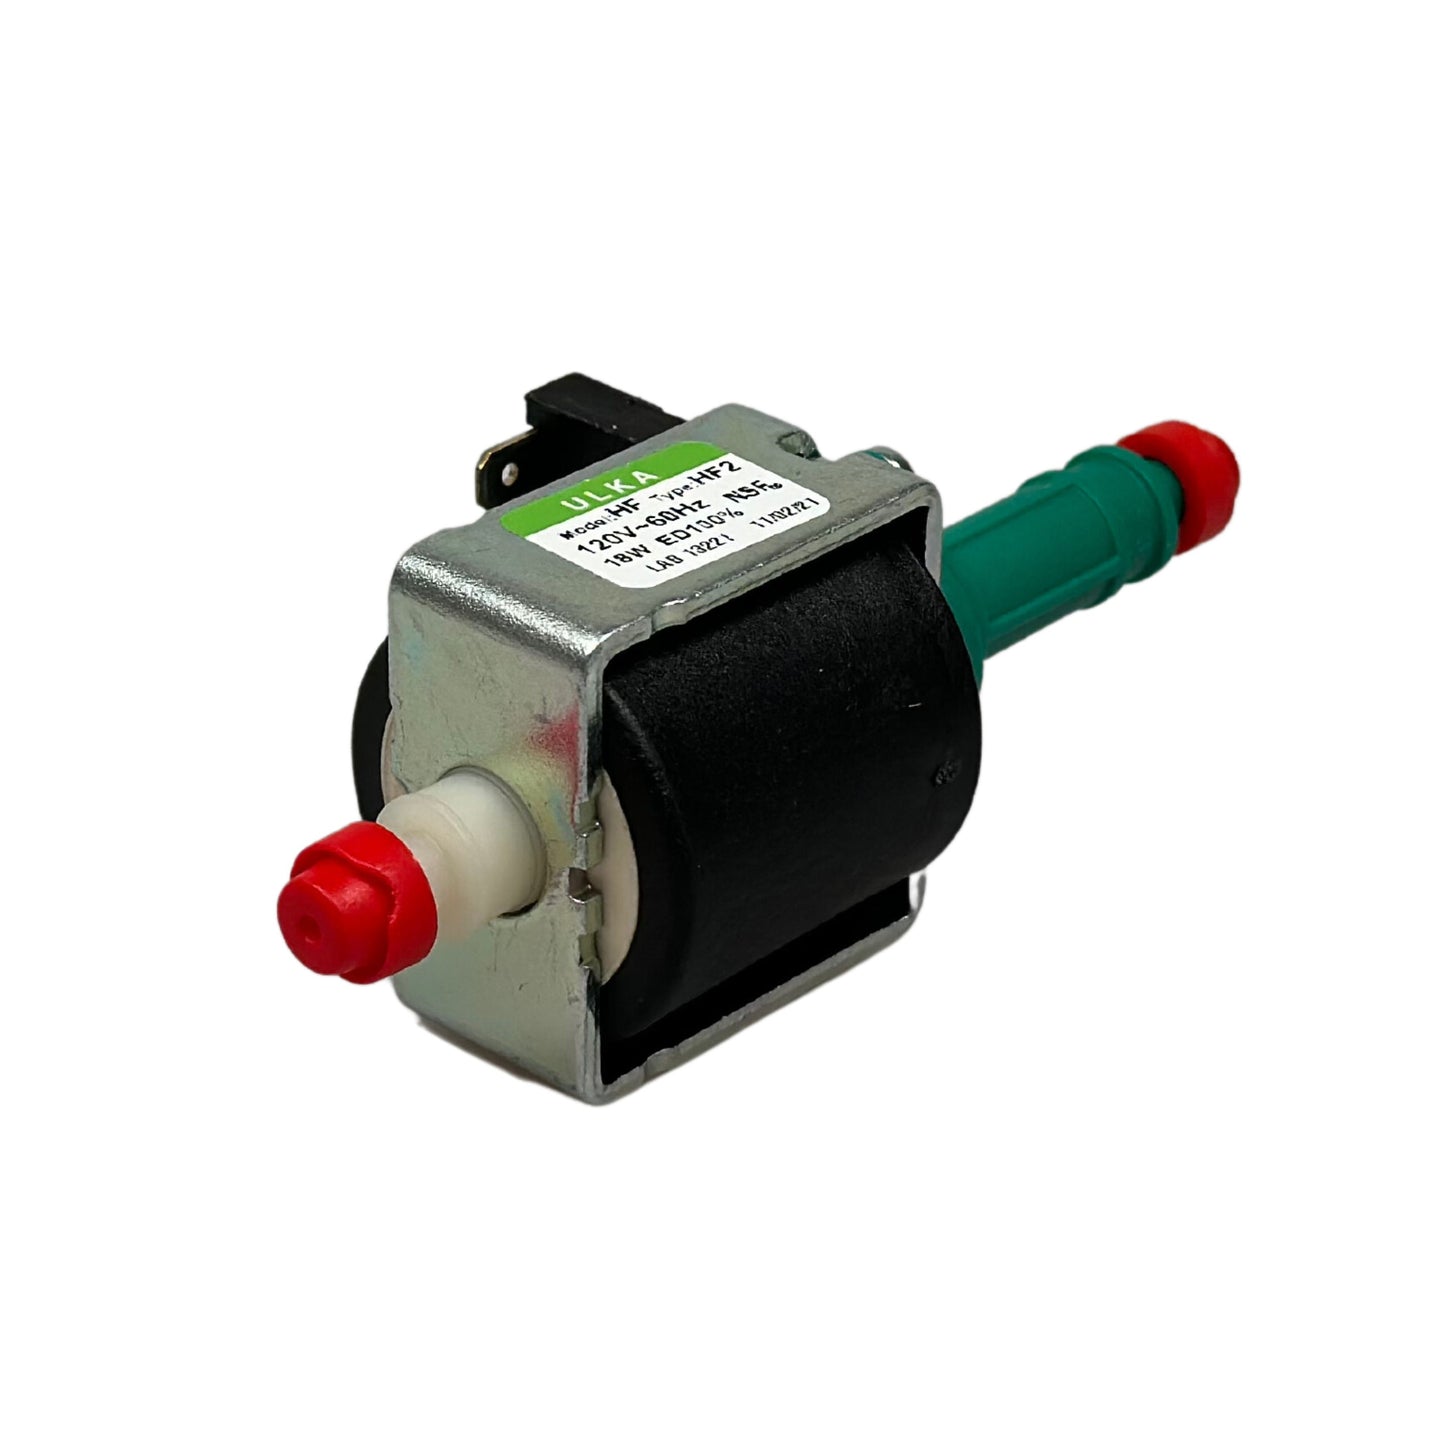 Ulka Vibration Pump HF2 - 120V, 60Hz, 18w NSF